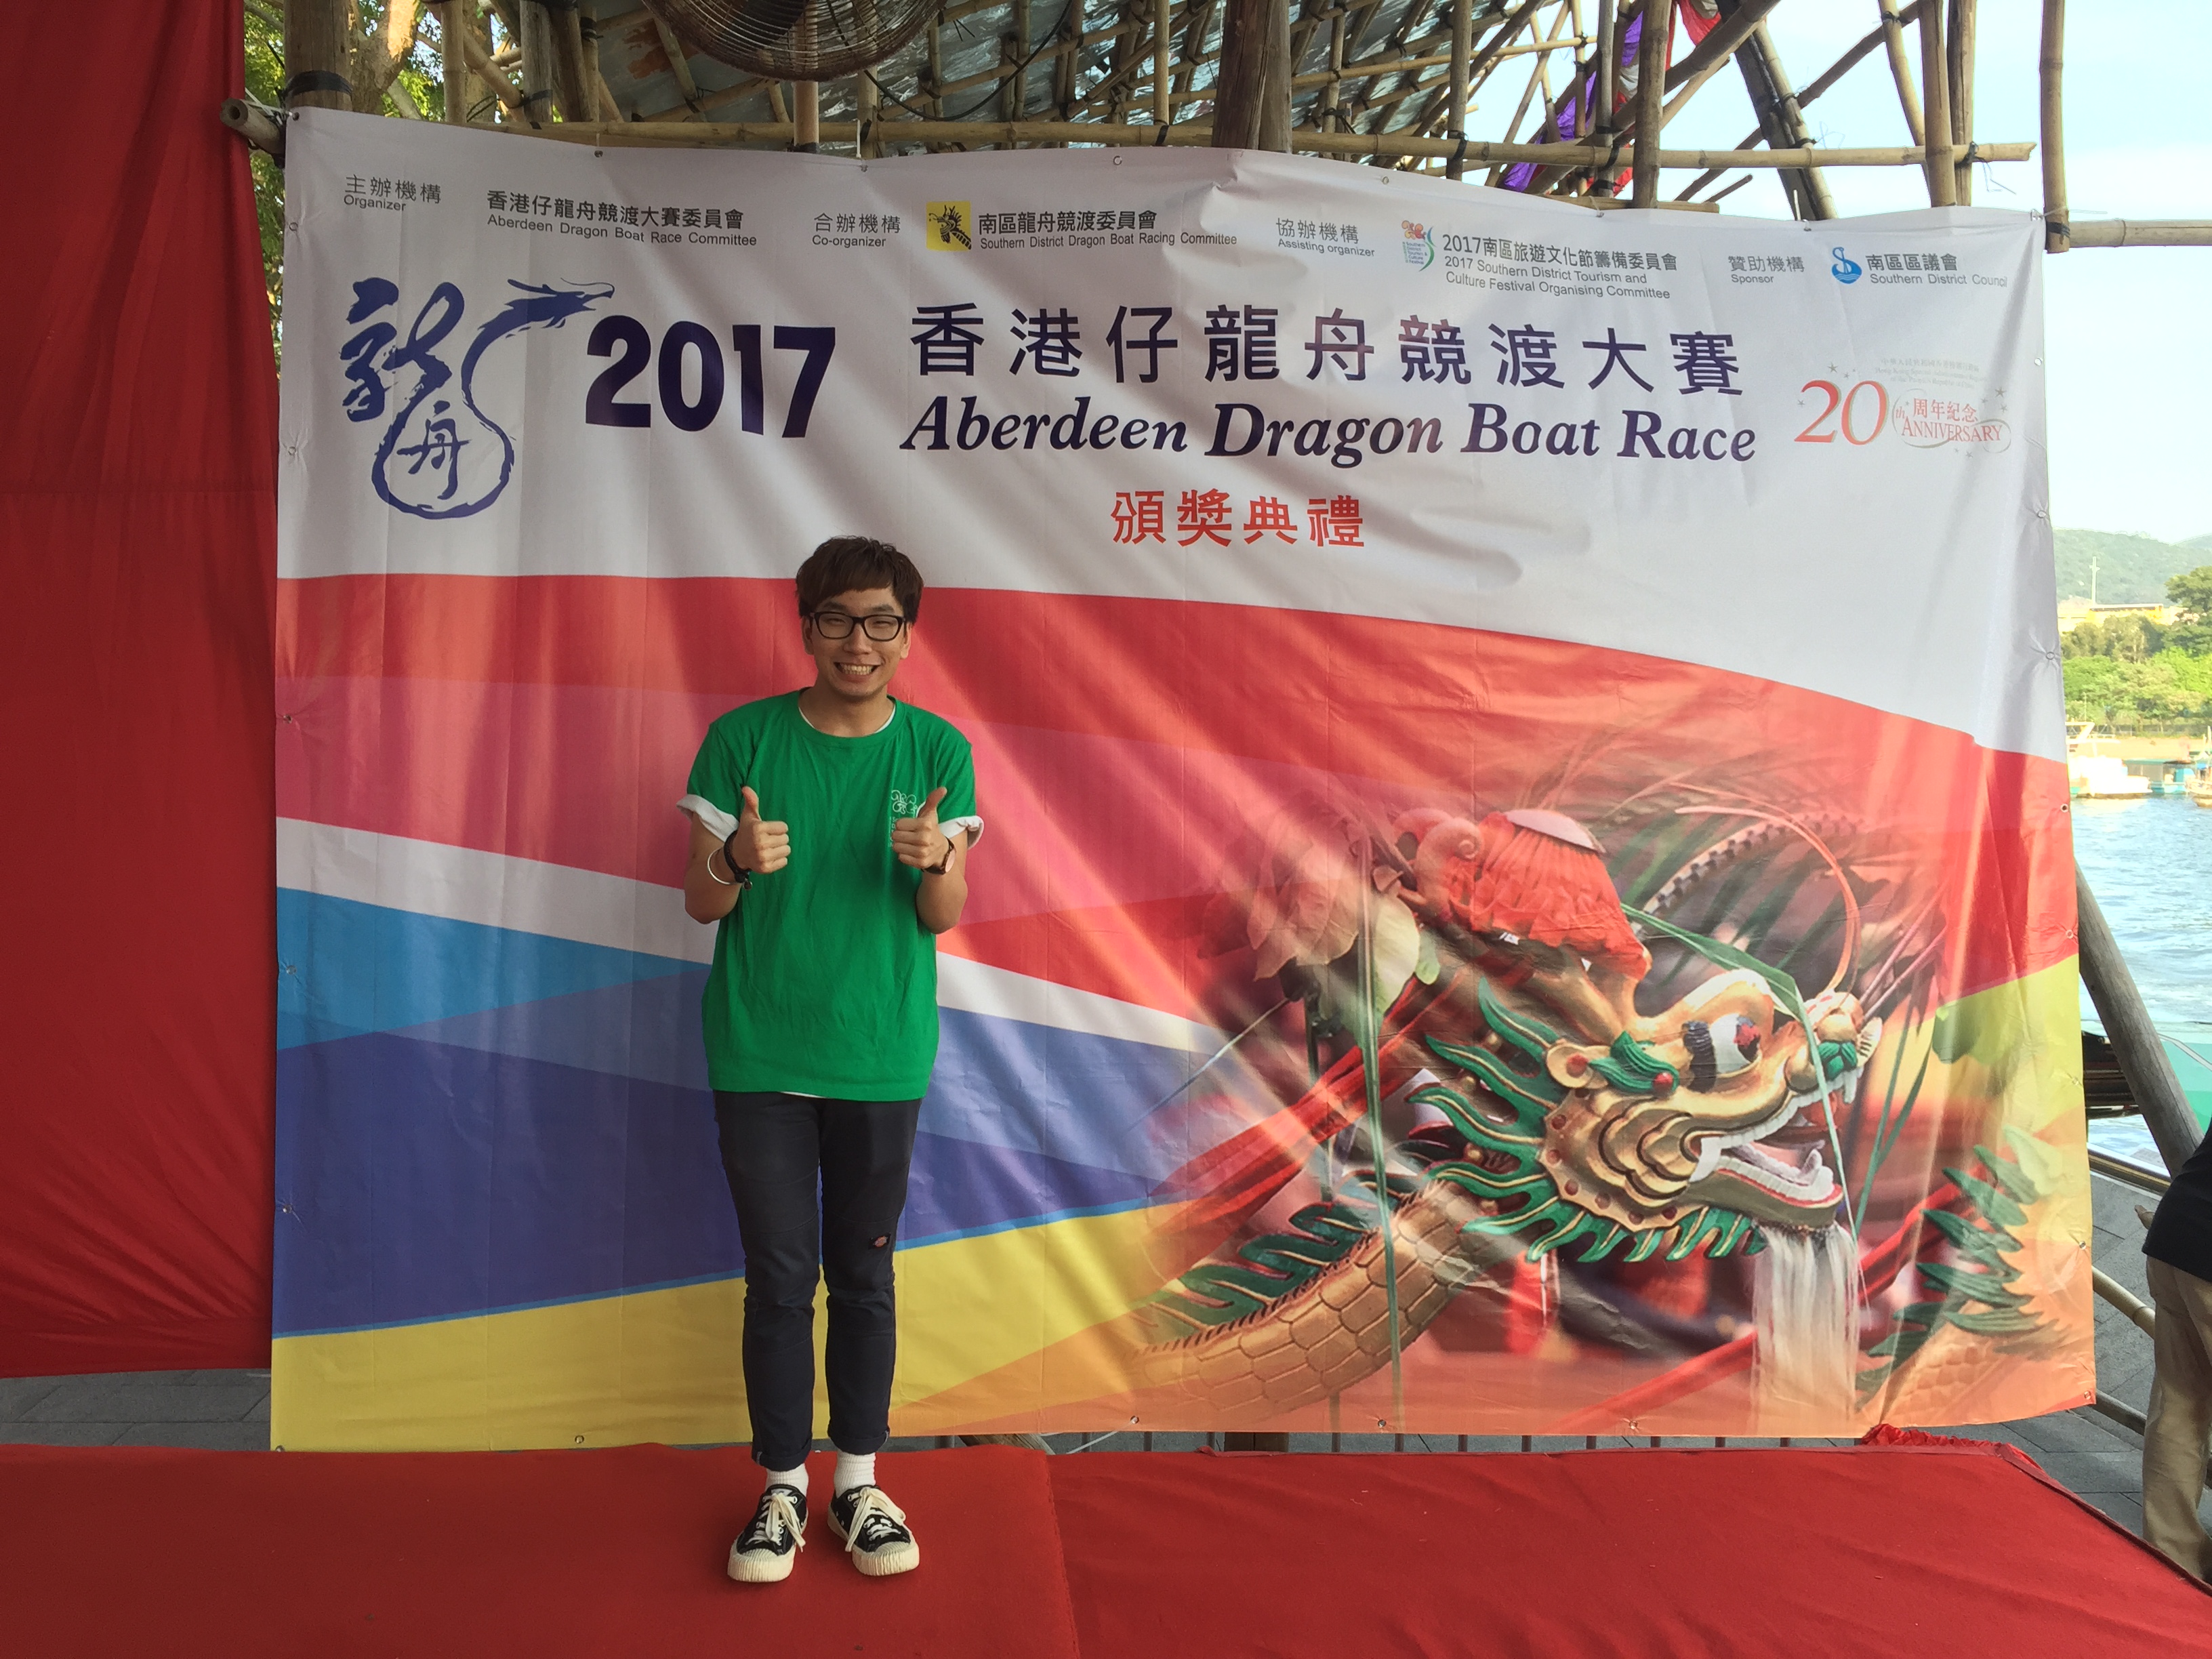 細眼司儀工作紀錄: 「活動主持」2017香港仔龍舟競渡大賽